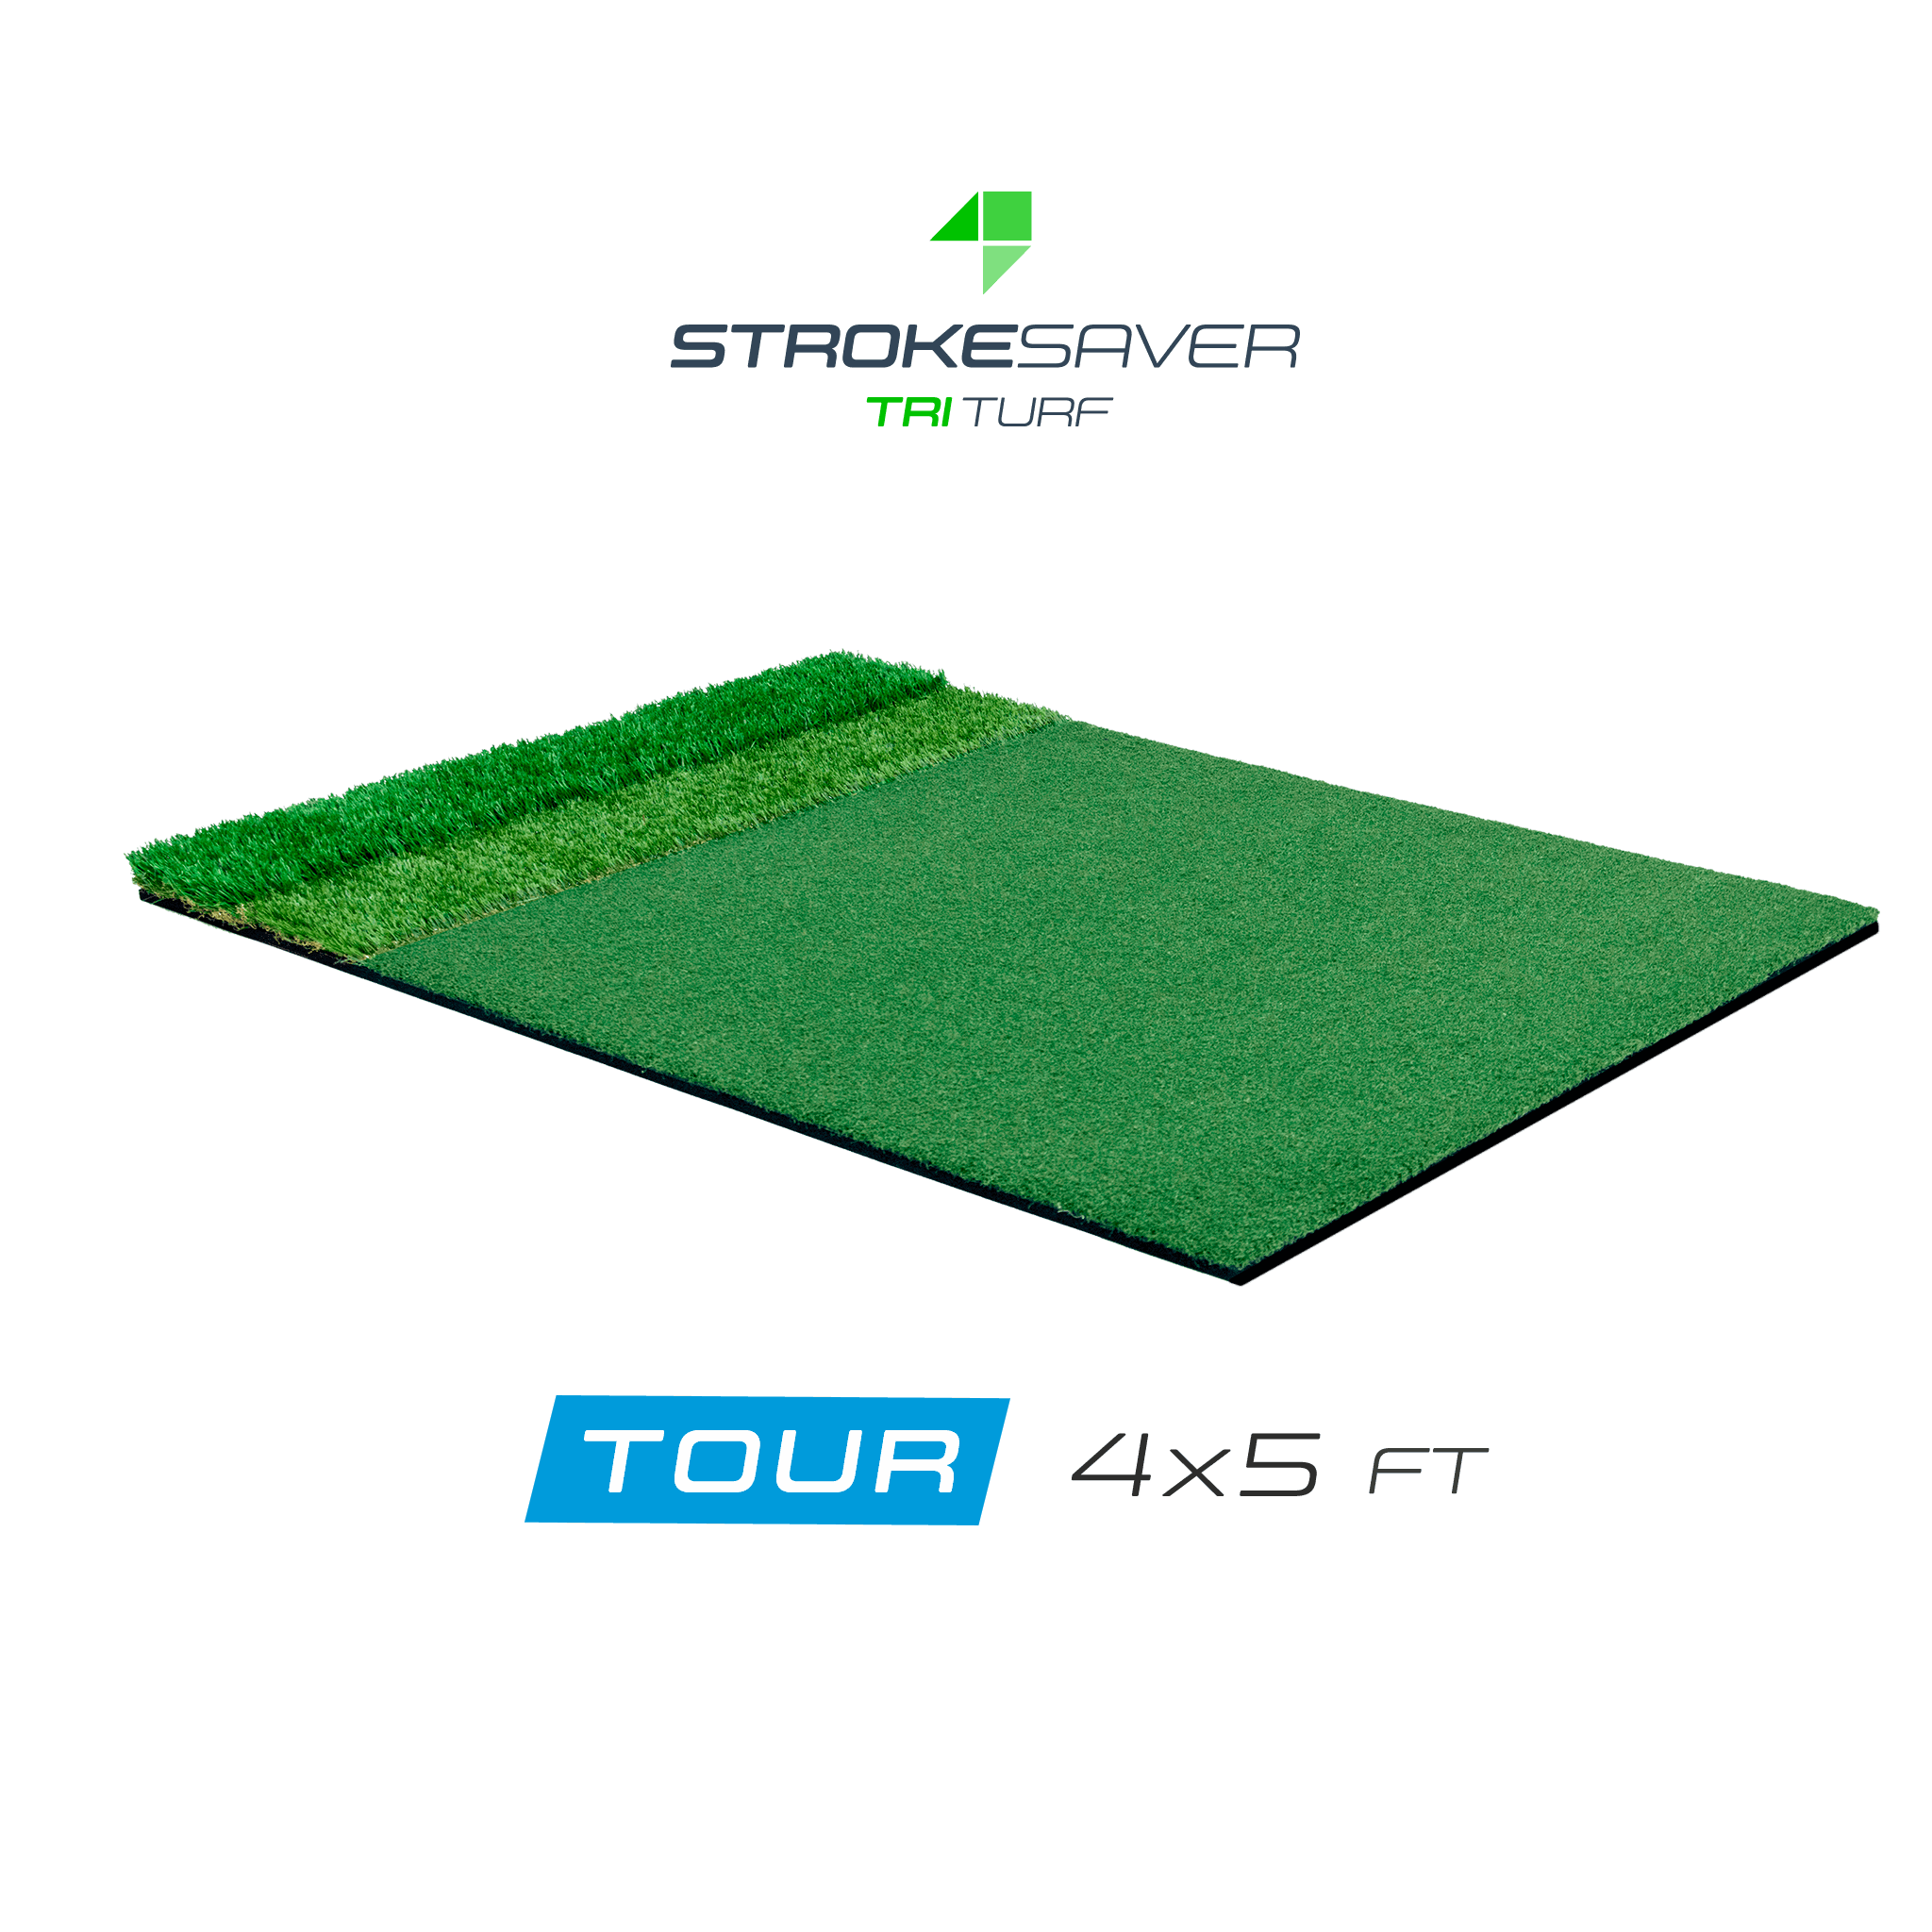 StrokeSaver Tri-Turf Tour